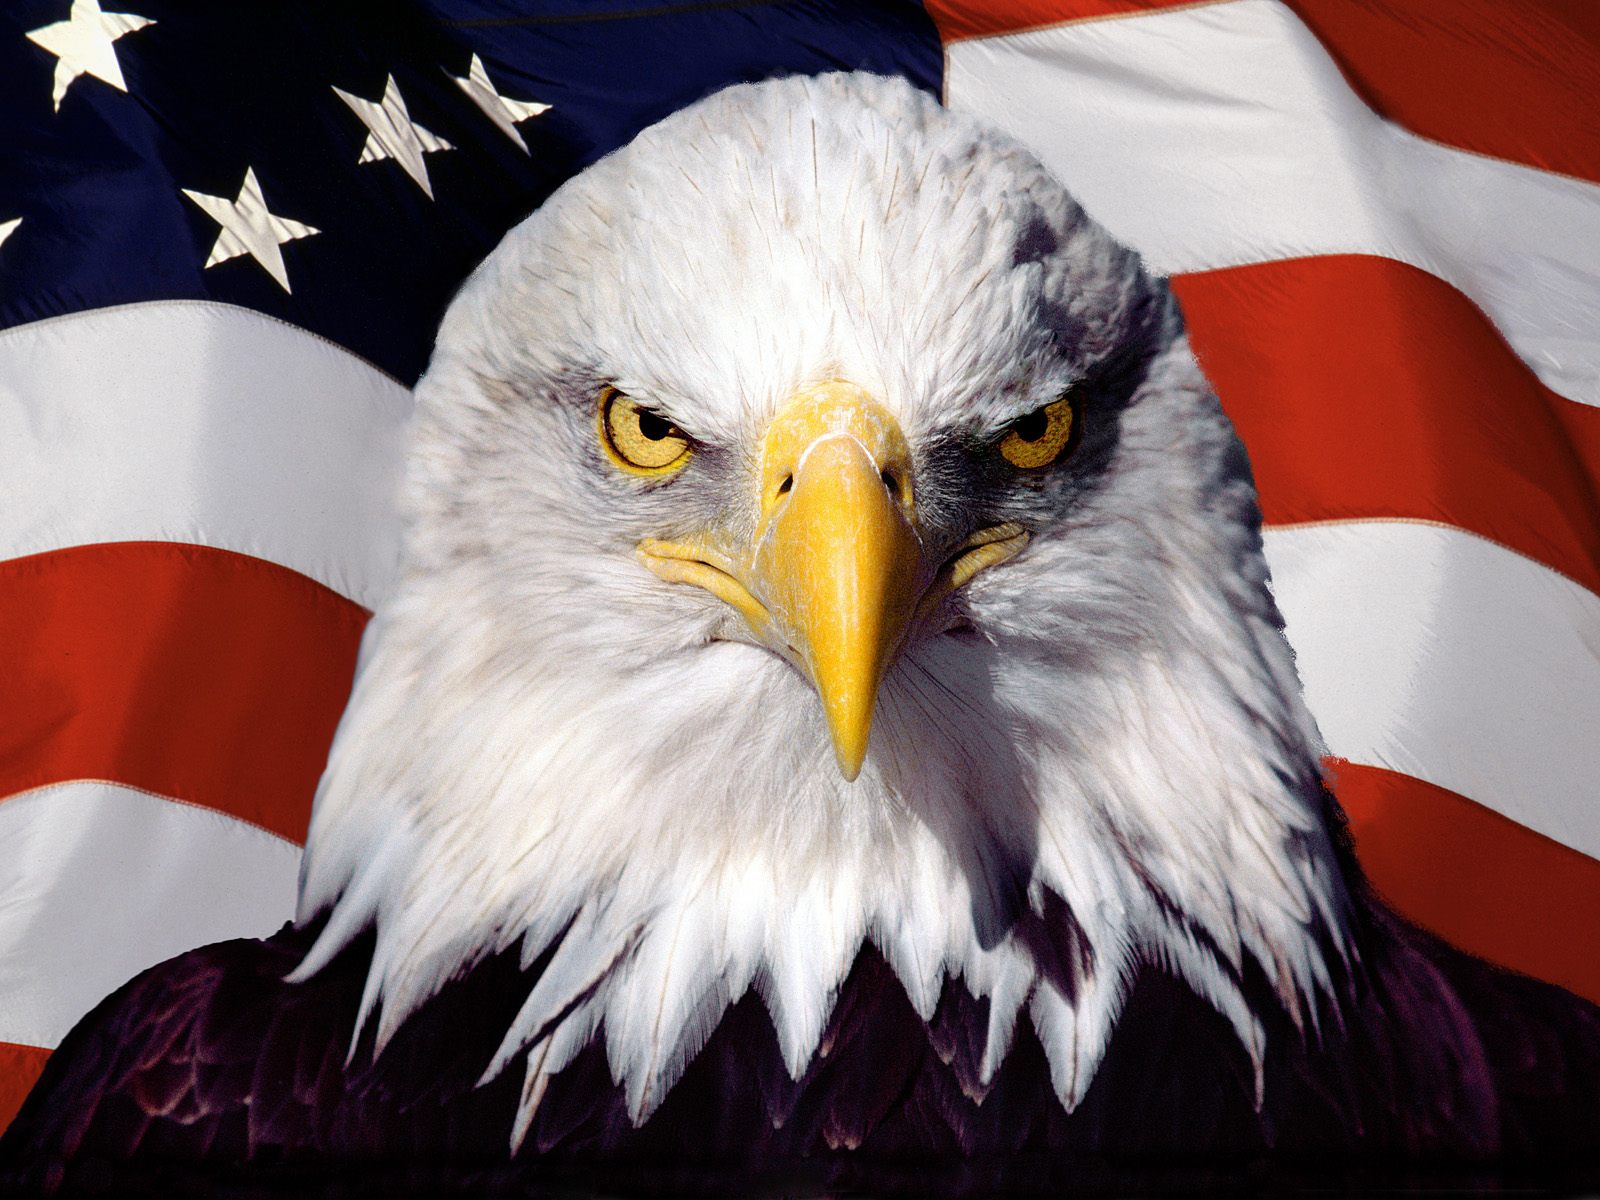 Biểu tượng quốc gia Hoa Kỳ: Biểu tượng quốc gia Hoa Kỳ là tượng Nữ thần Tự do đặt trên đảo Liberty. Hình ảnh biểu tượng này được liên kết với sự tự do, quyền lợi và chủ quyền của Hoa Kỳ. Hãy xem hình ảnh và cảm nhận sự trang nghiêm và tôn nghiêm của biểu tượng quốc gia Hoa Kỳ.